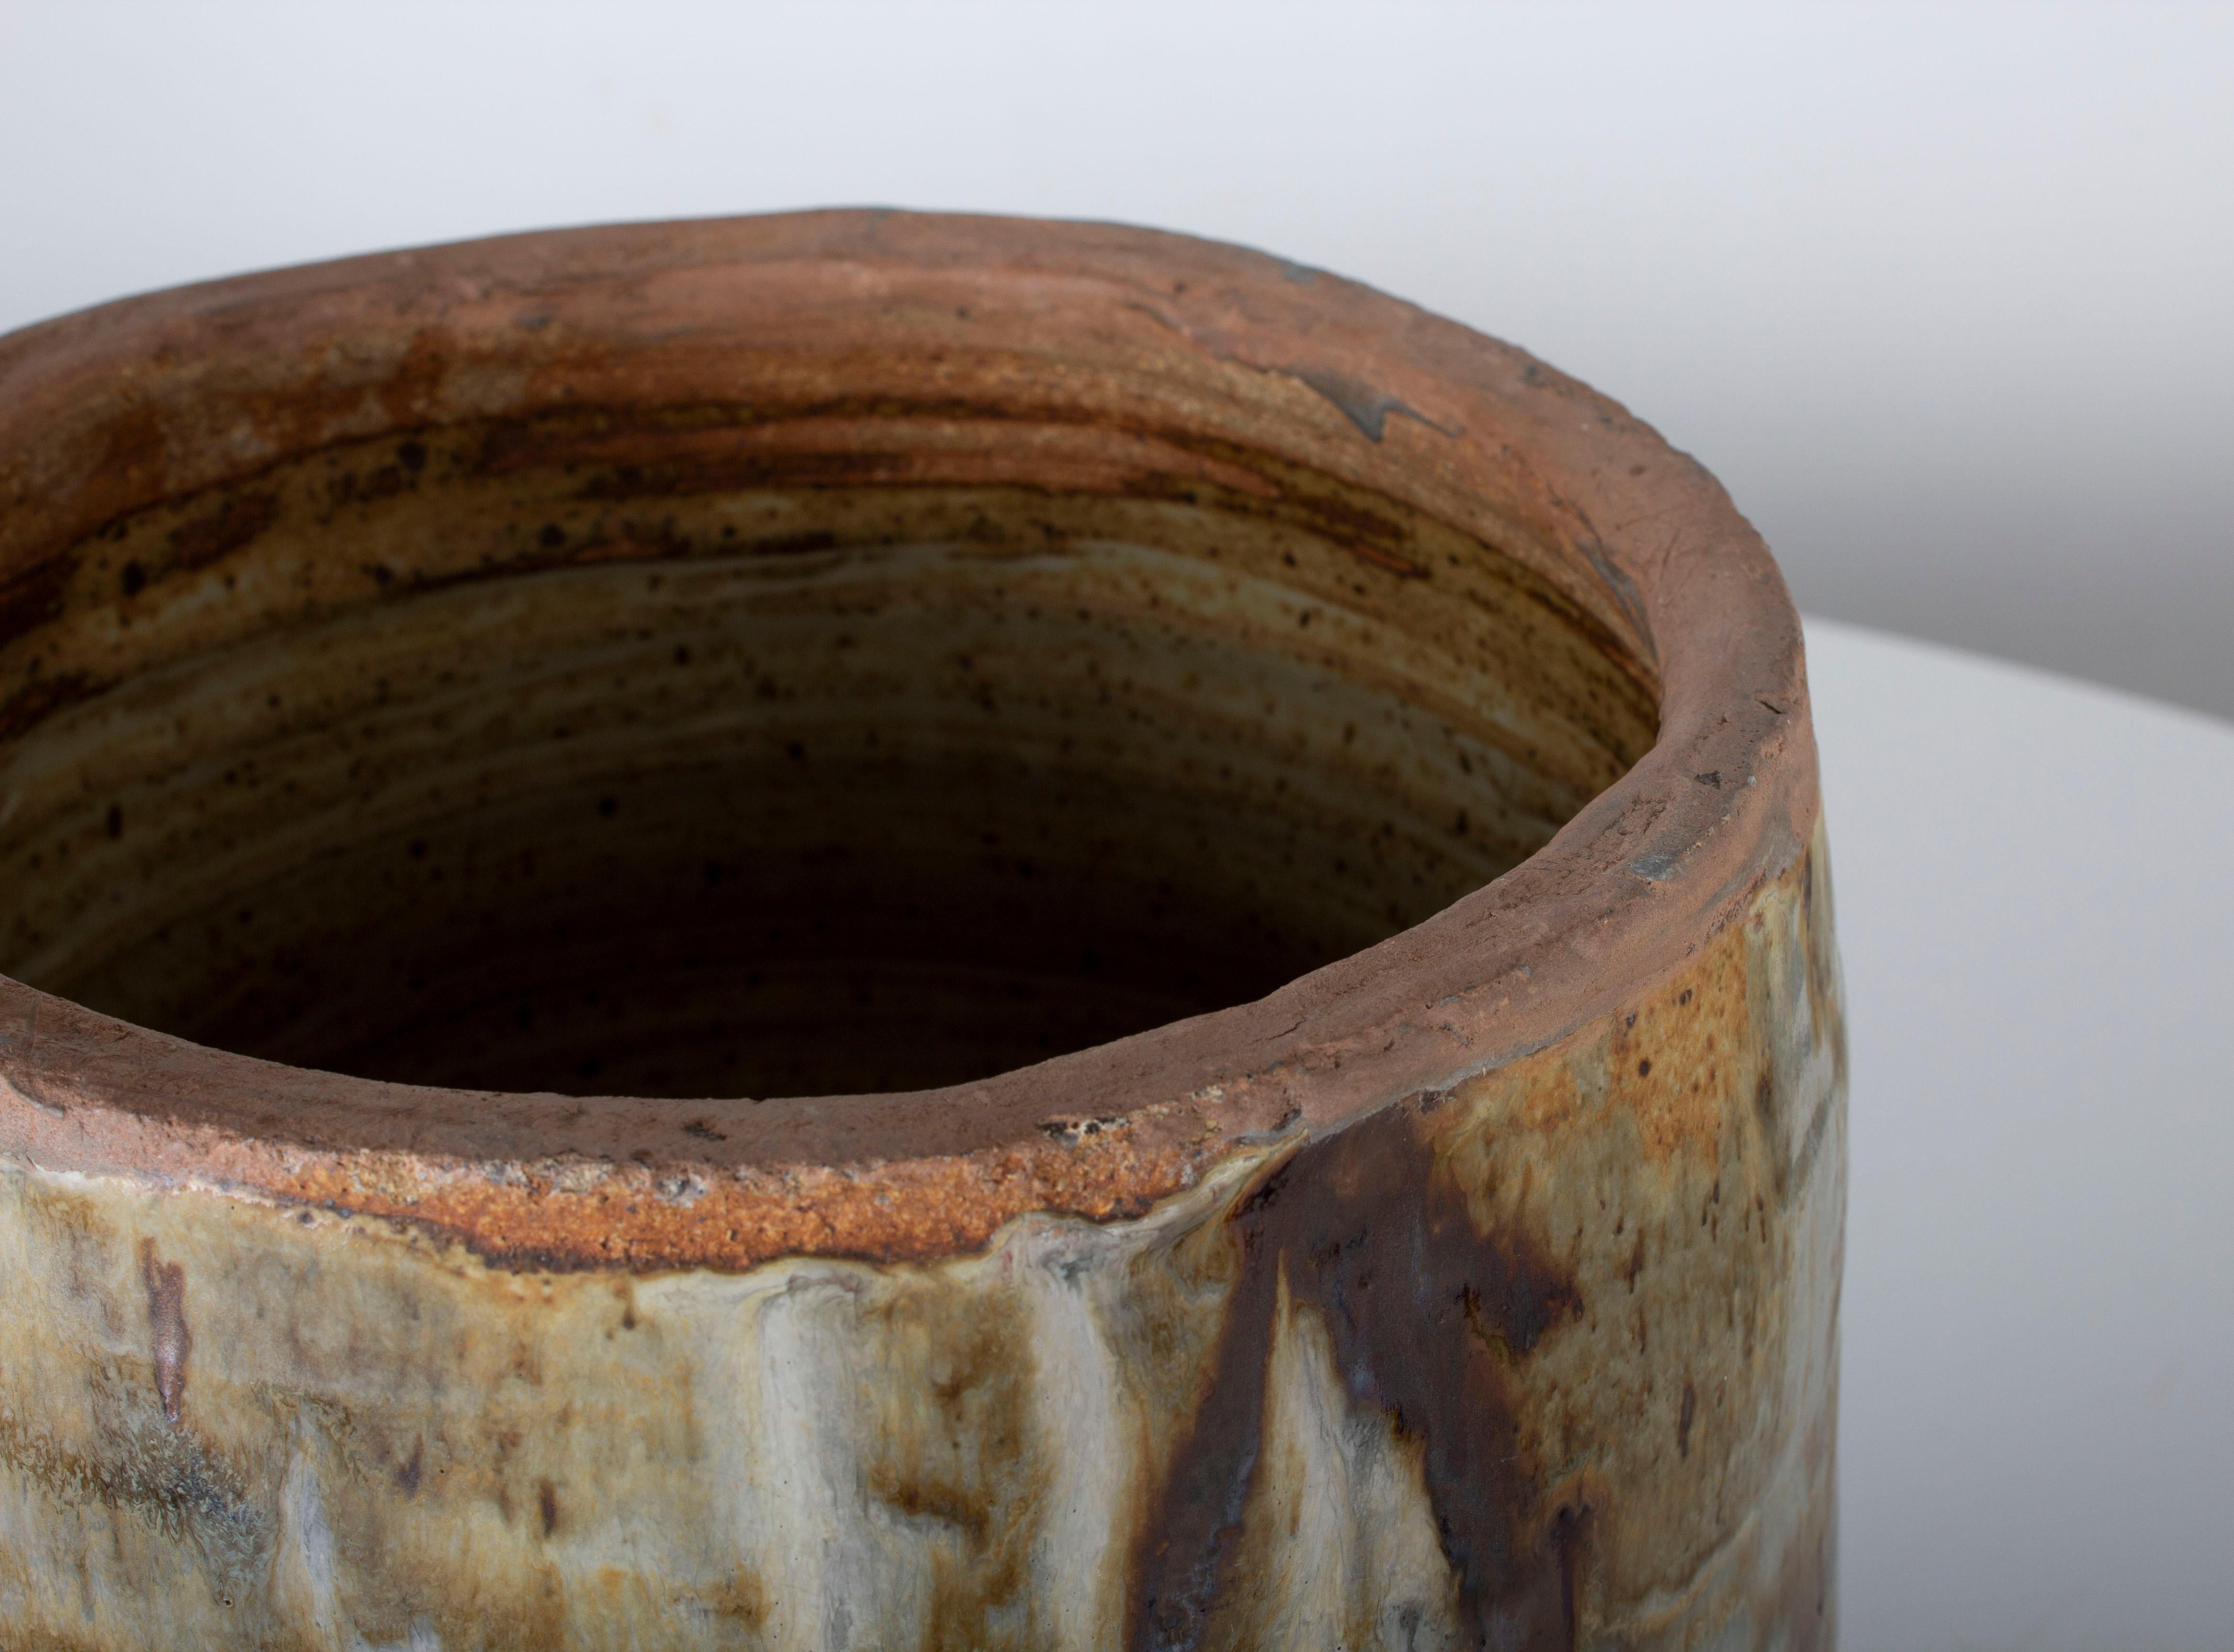 Primitive Eric O'Leary Tariki Studio Pottery Monumental Glazed Pot